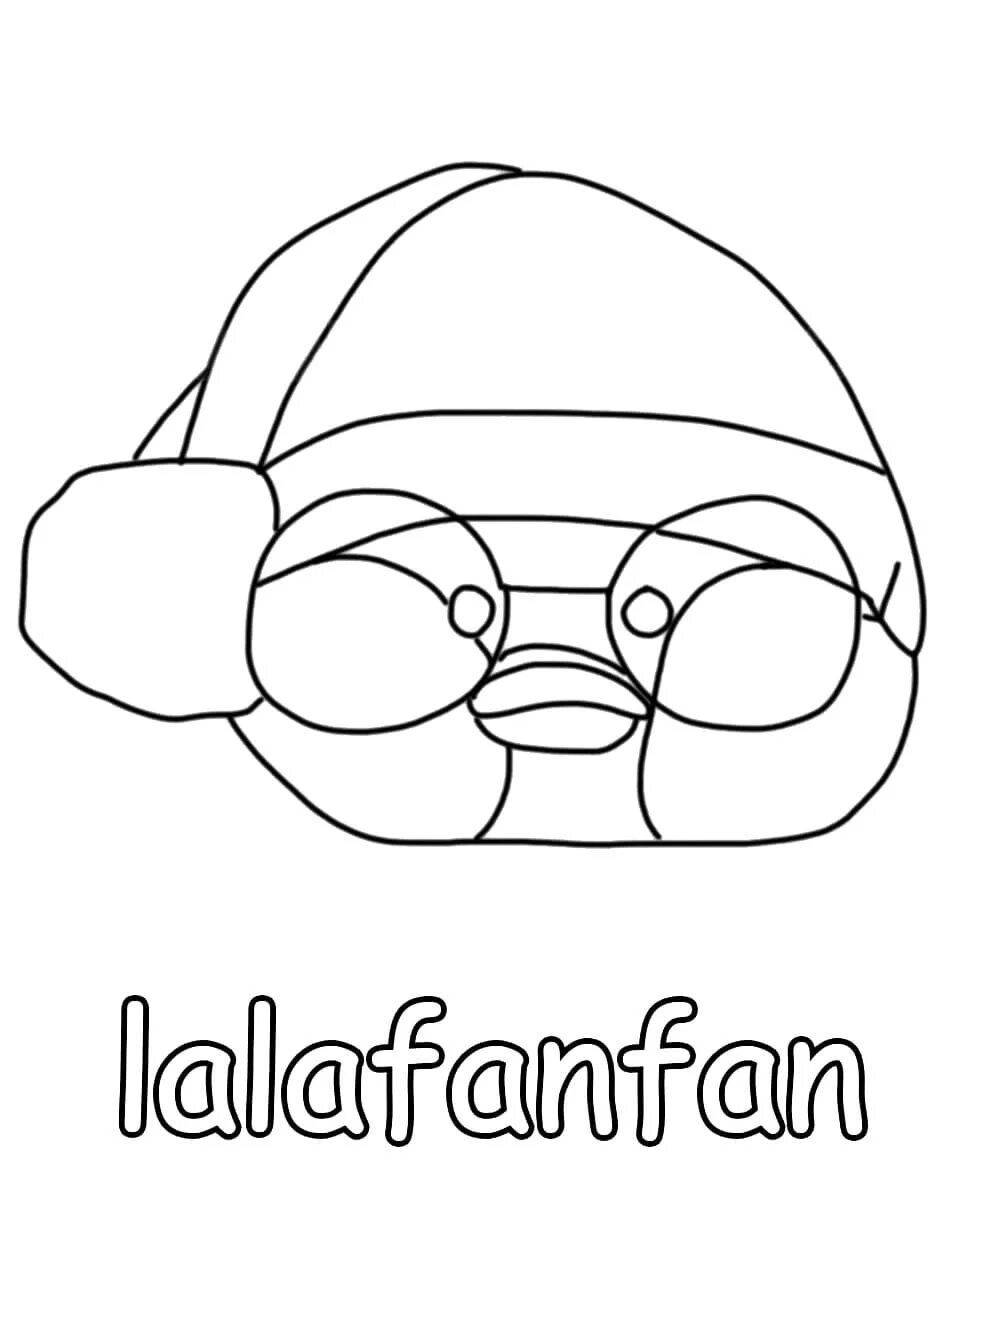 Lalafanfan duck printout #5